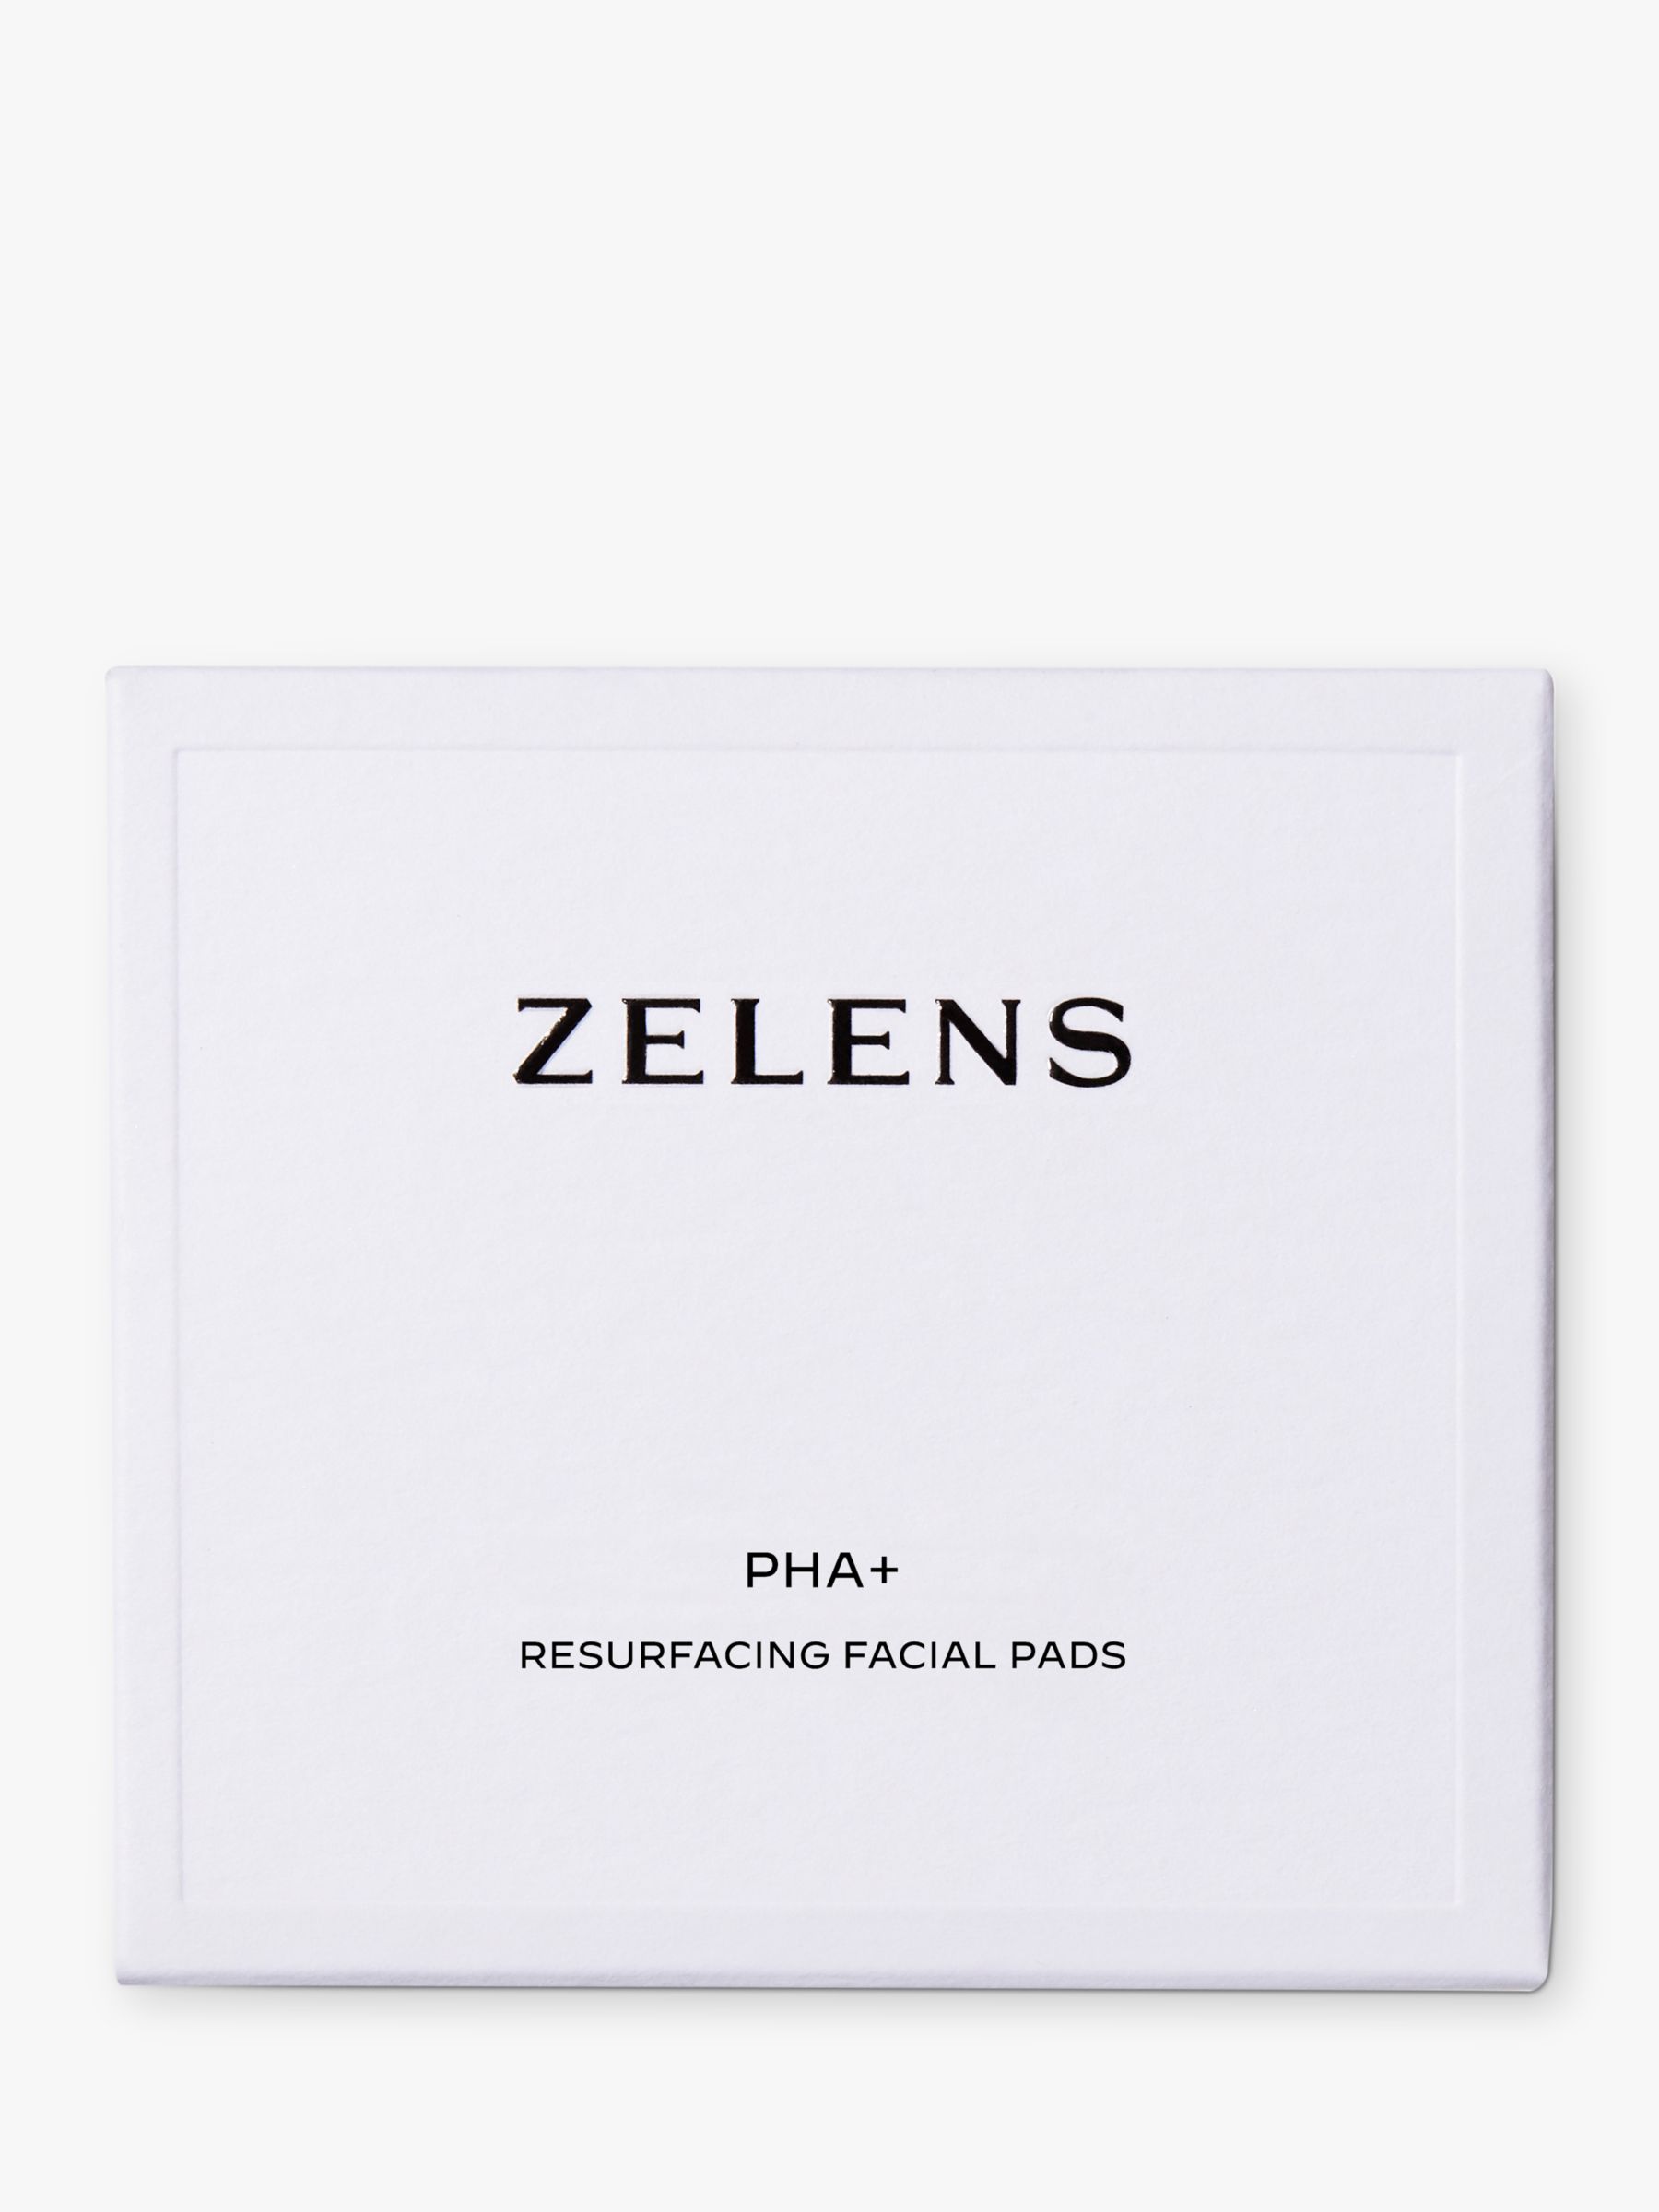 Zelens PHA+ Resurfacing Facial Pads, x 50 2